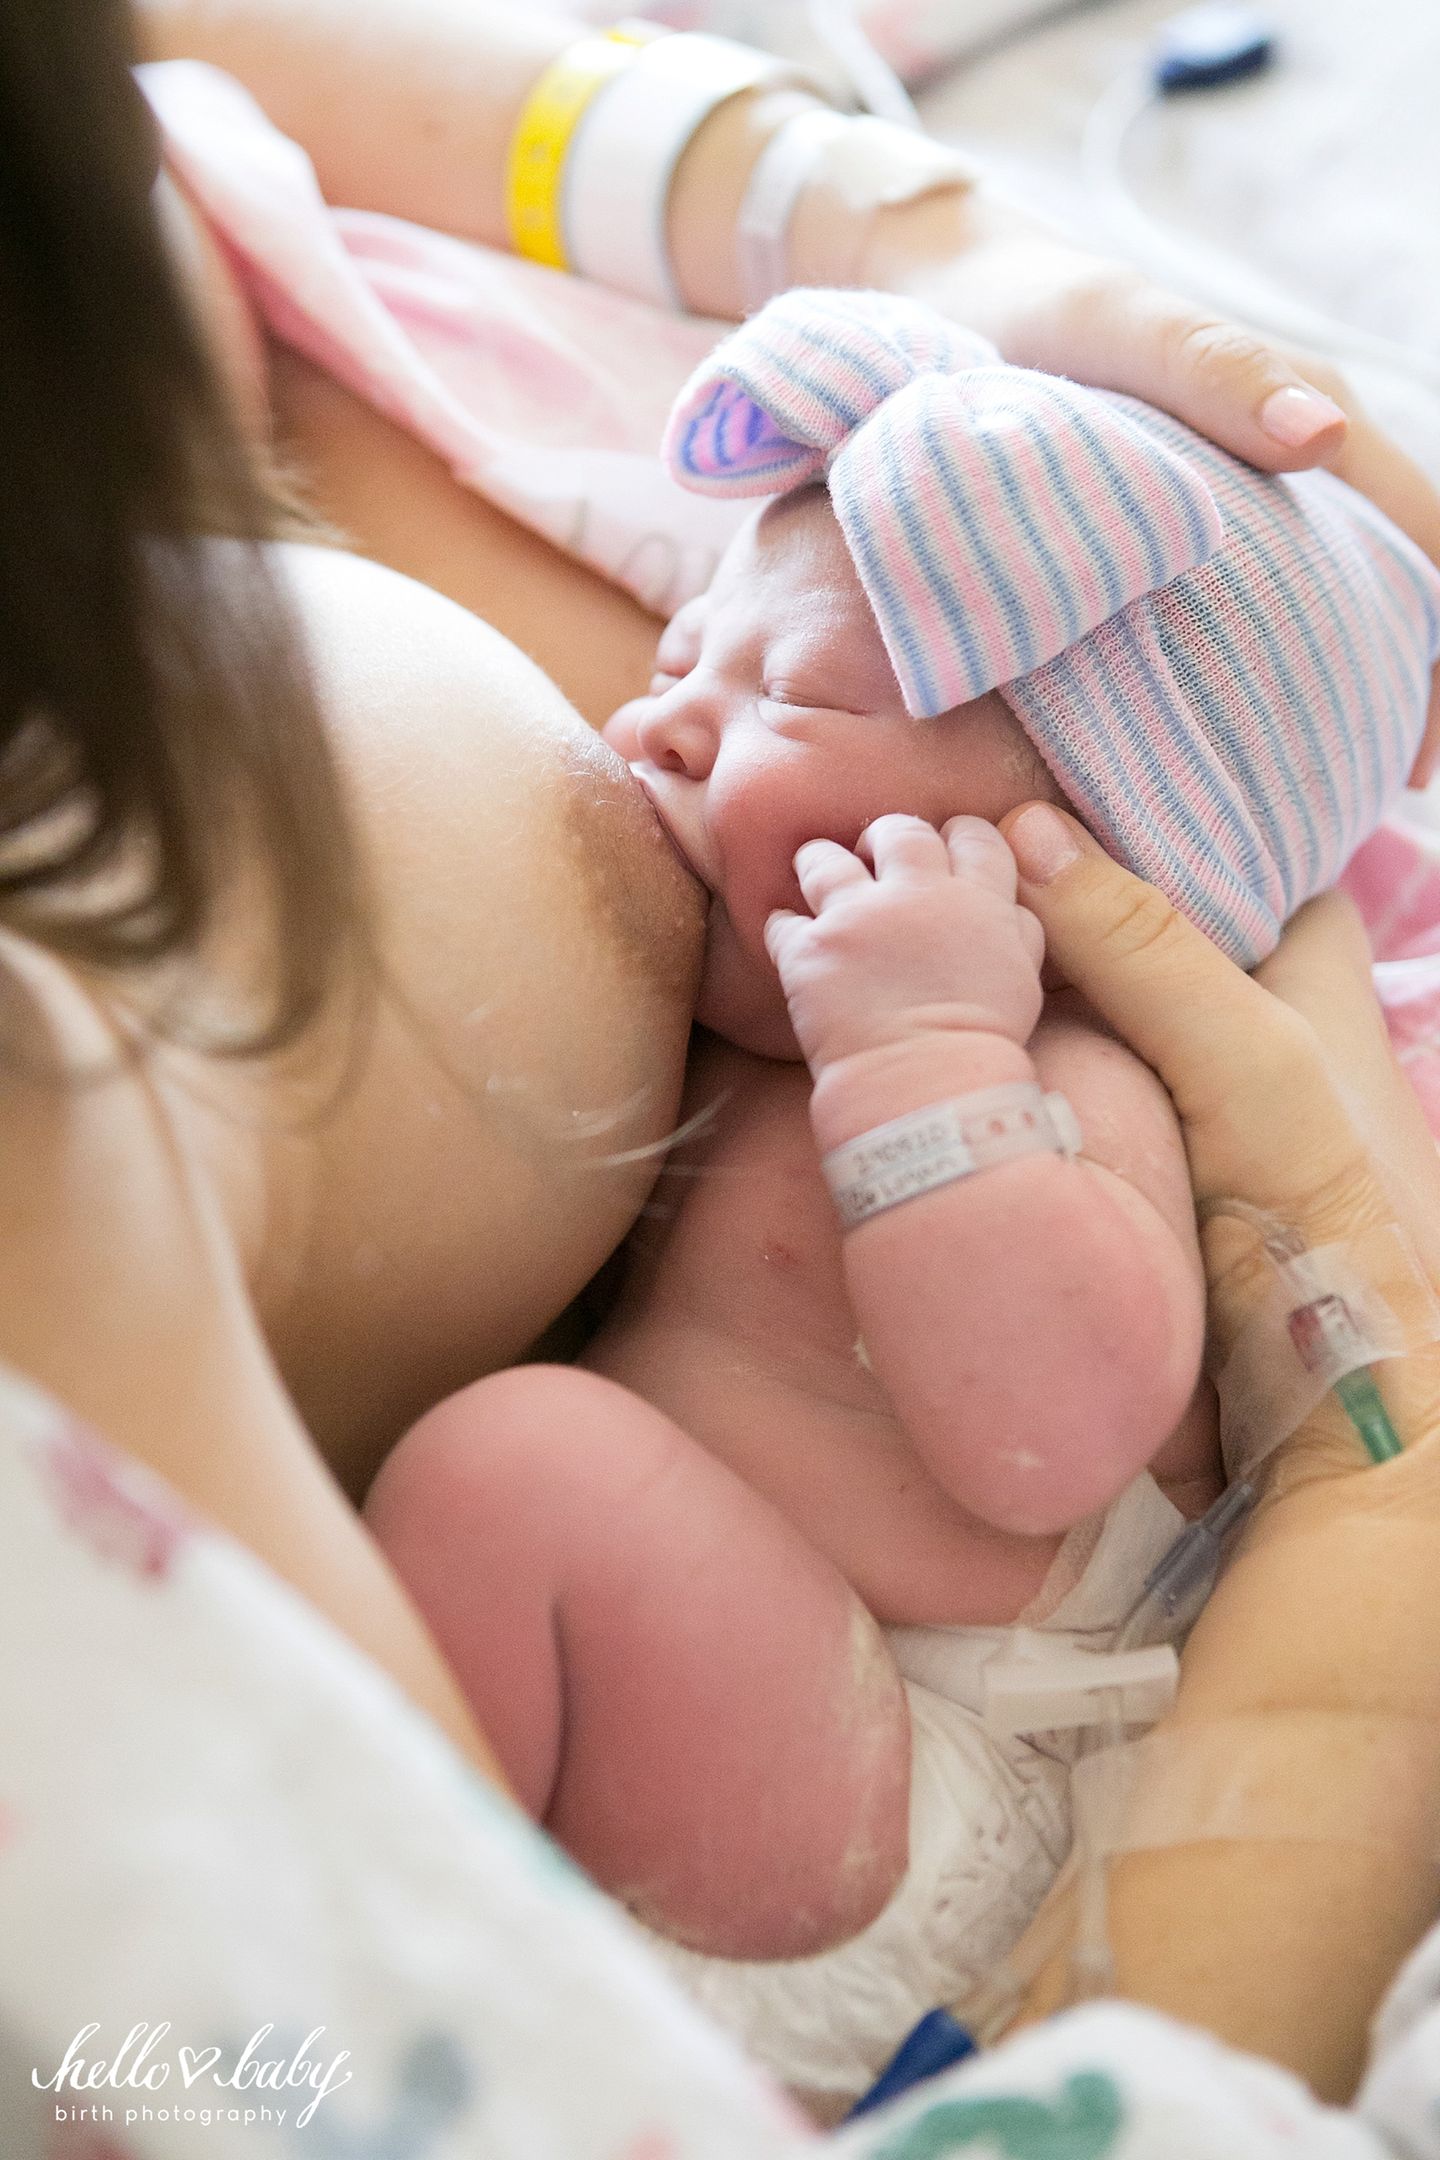 Emotionen pur!: "Der Moment, in dem ein Baby zum ersten Mal an der Brust seiner Mutter saugt, fasziniert mich immer wieder. Dieser Instinkt ist unglaublich!" Hier seht ihr noch mehr Bilder von Hello Baby Birth Photography.